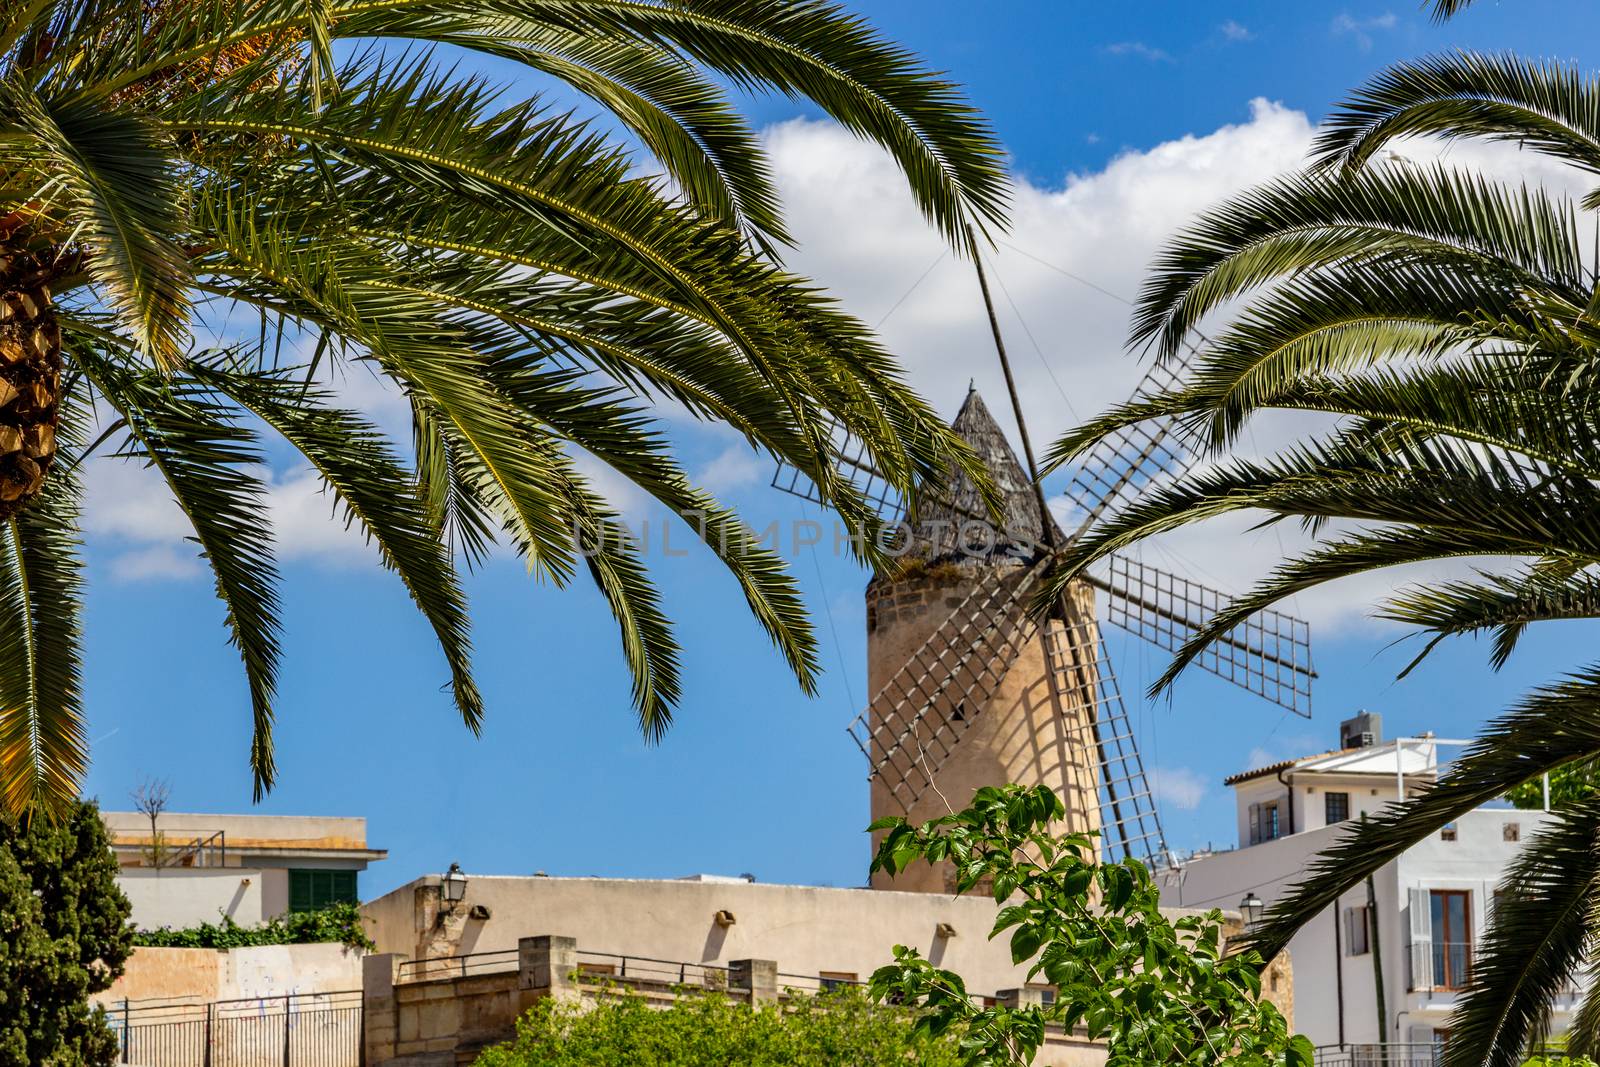 Windmill in Palma de Mallorca, Spain by reinerc